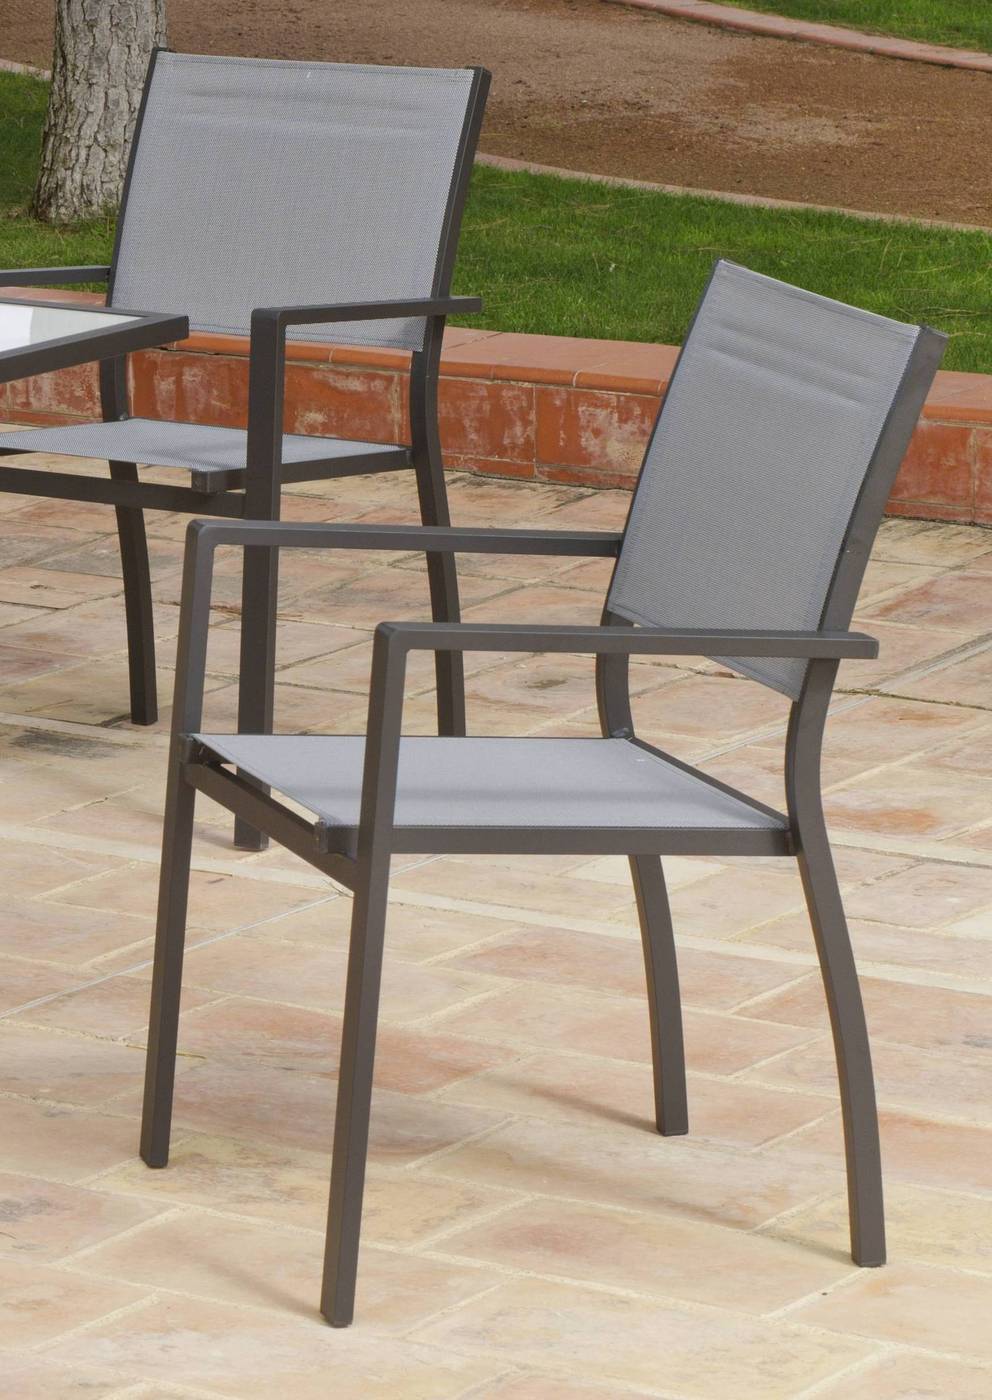 Set Aluminio Goa 180-4 - Conjunto de aluminio color antracita: mesa extensible 90-180 cm. + 4 sillones apilables de alumino y textilen